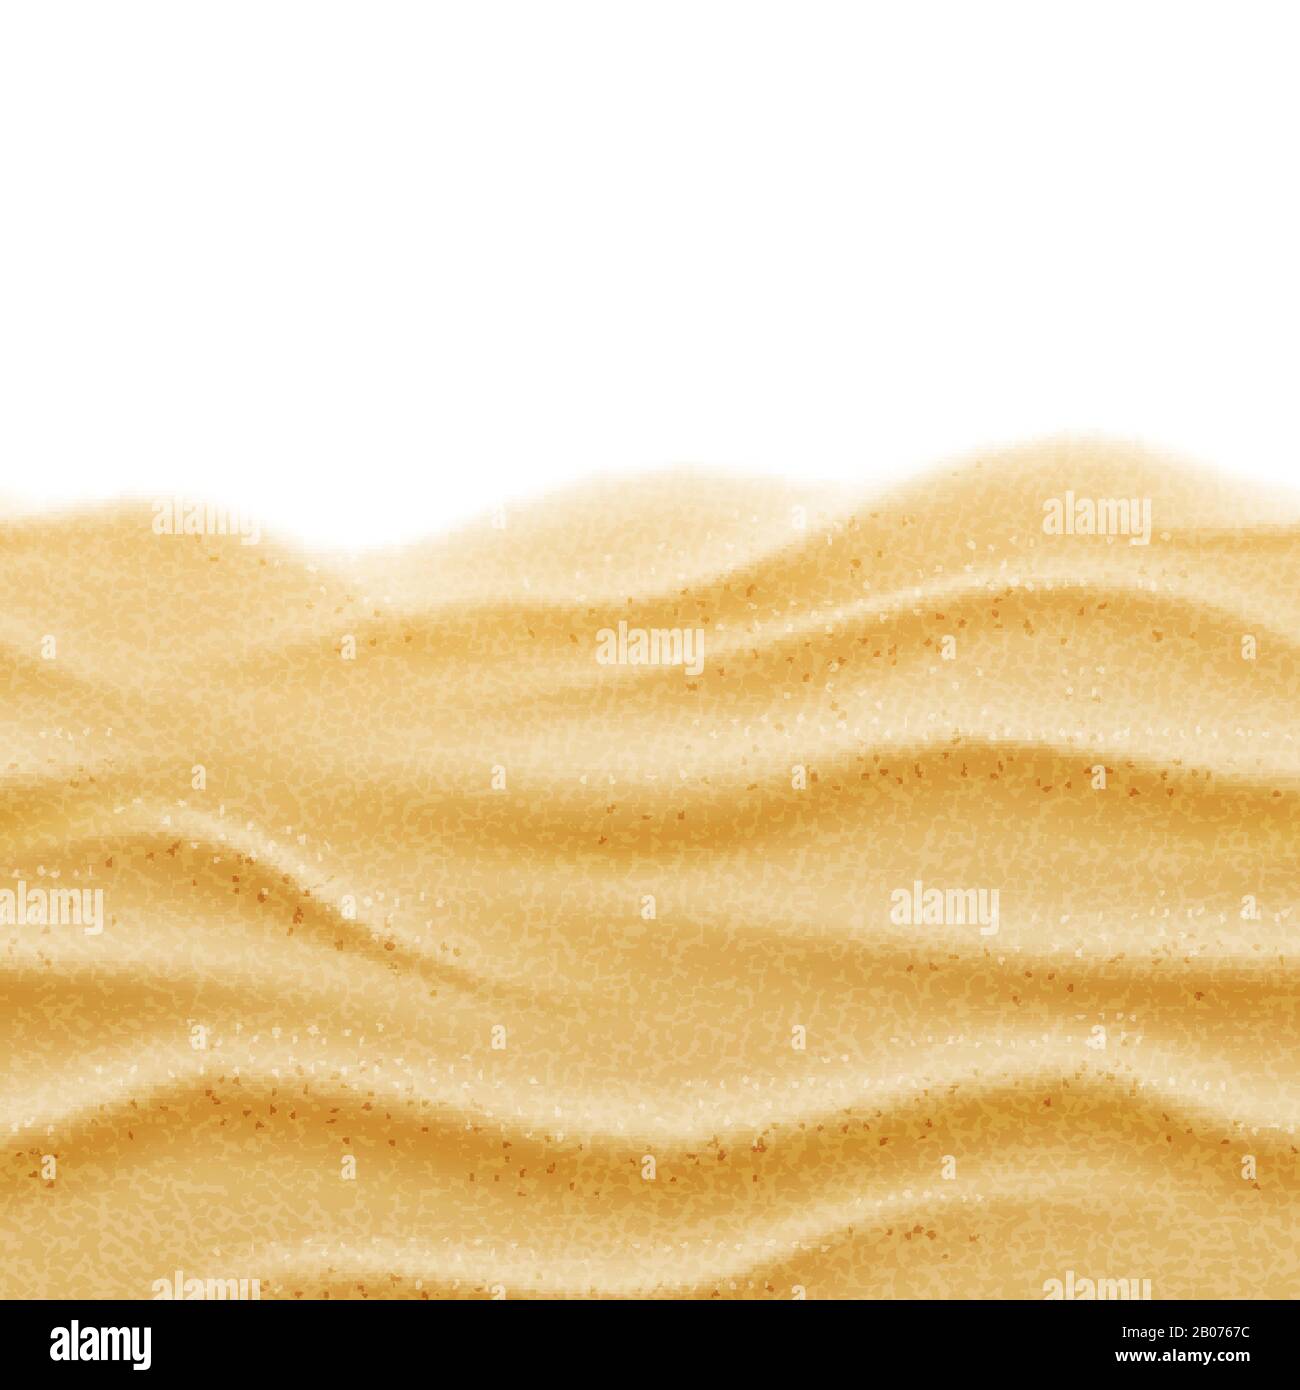 Strand Sand nahtloser Hintergrund mit Vektortextur. Abbildung der natürlichen Sandwellen Stock Vektor